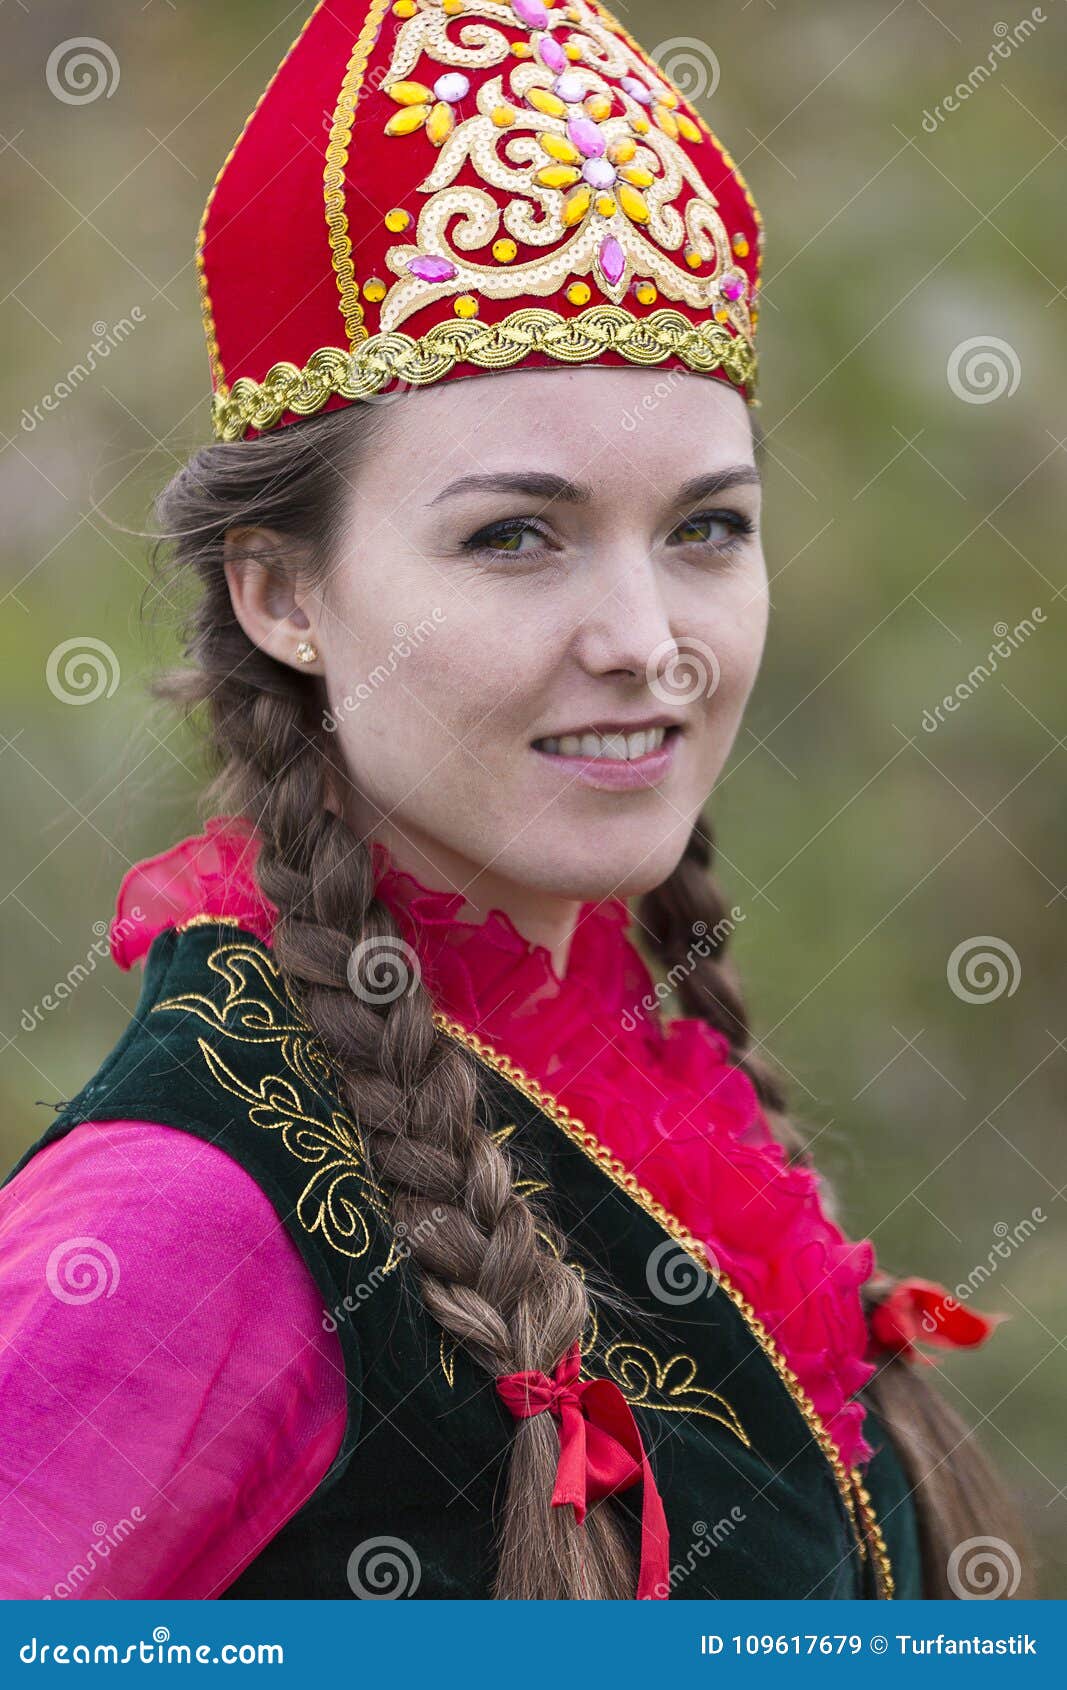 哈萨克族服饰文化解读 - 哔哩哔哩